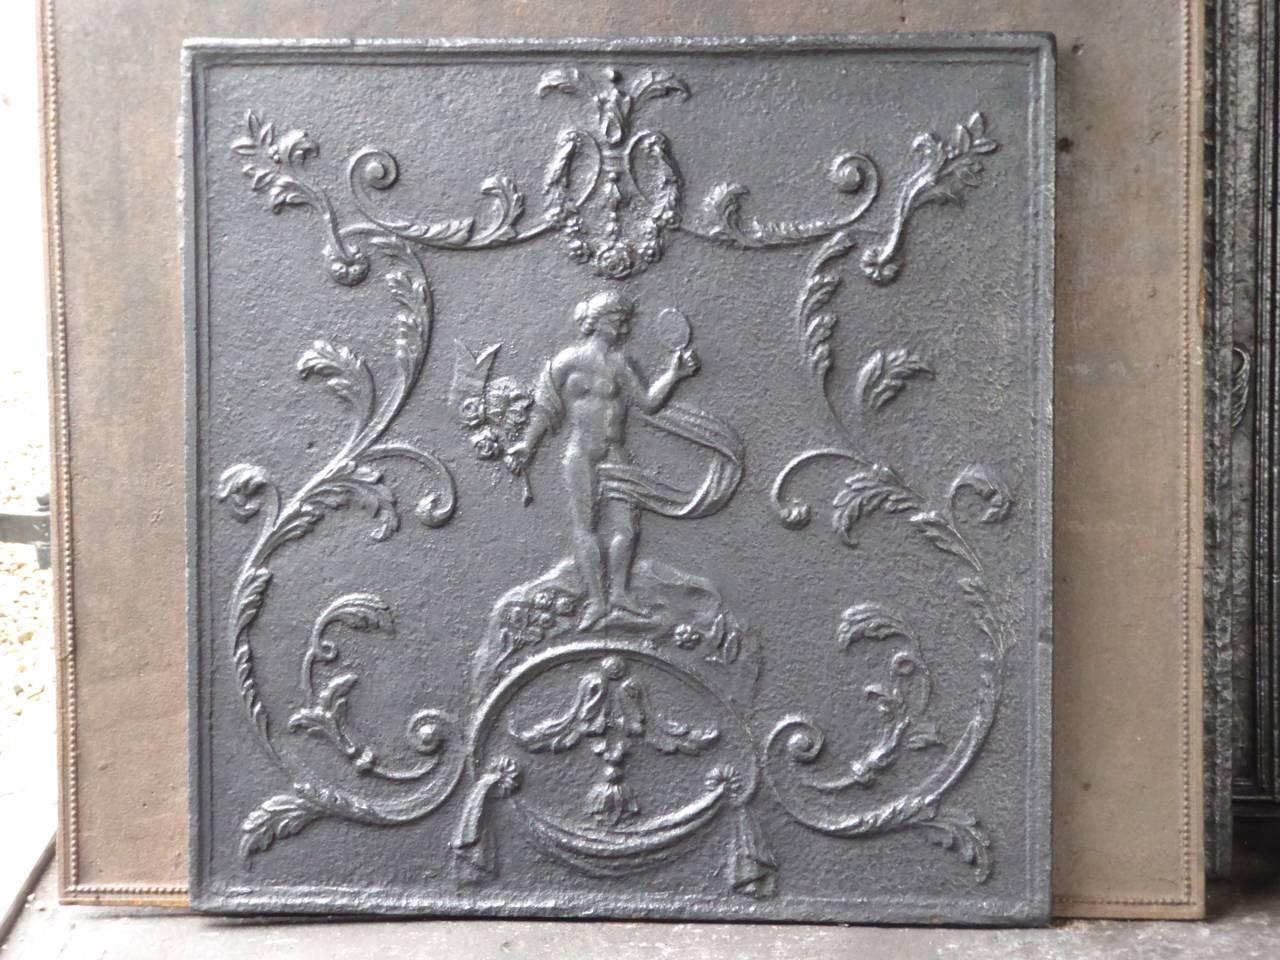 Plaque de cheminée française du XVIIIe siècle représentant la déesse Vénus. Vénus tient son miroir et un bouquet de fleurs. Déesse de l'amour, de la beauté et de la fertilité.

La plaque de cheminée est en fonte et a une patine noire/étain. L'état